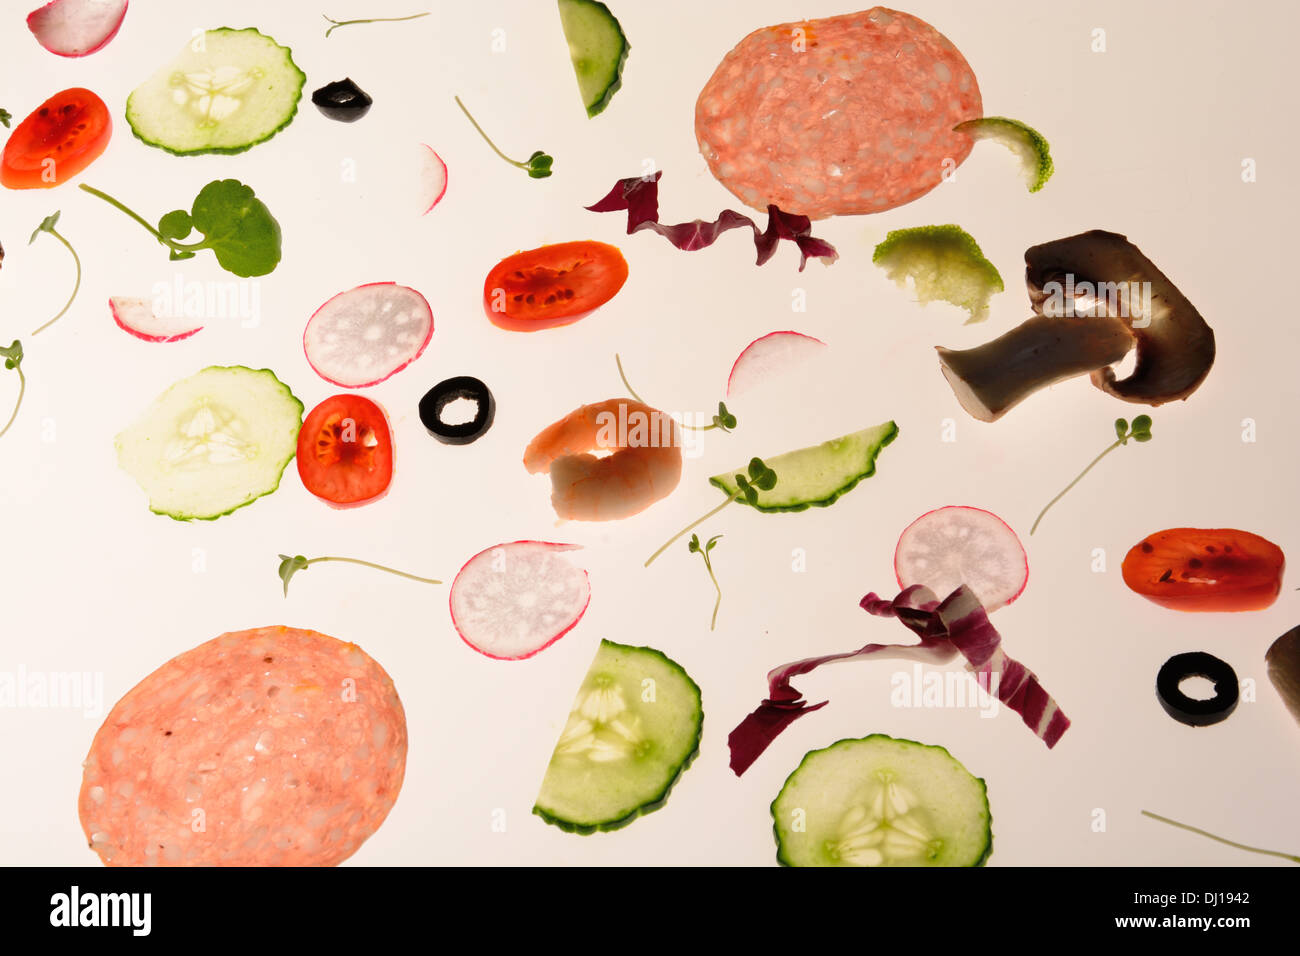 Random insalata sparsi ingredienti su sfondo bianco isolato su sfondo bianco Foto Stock